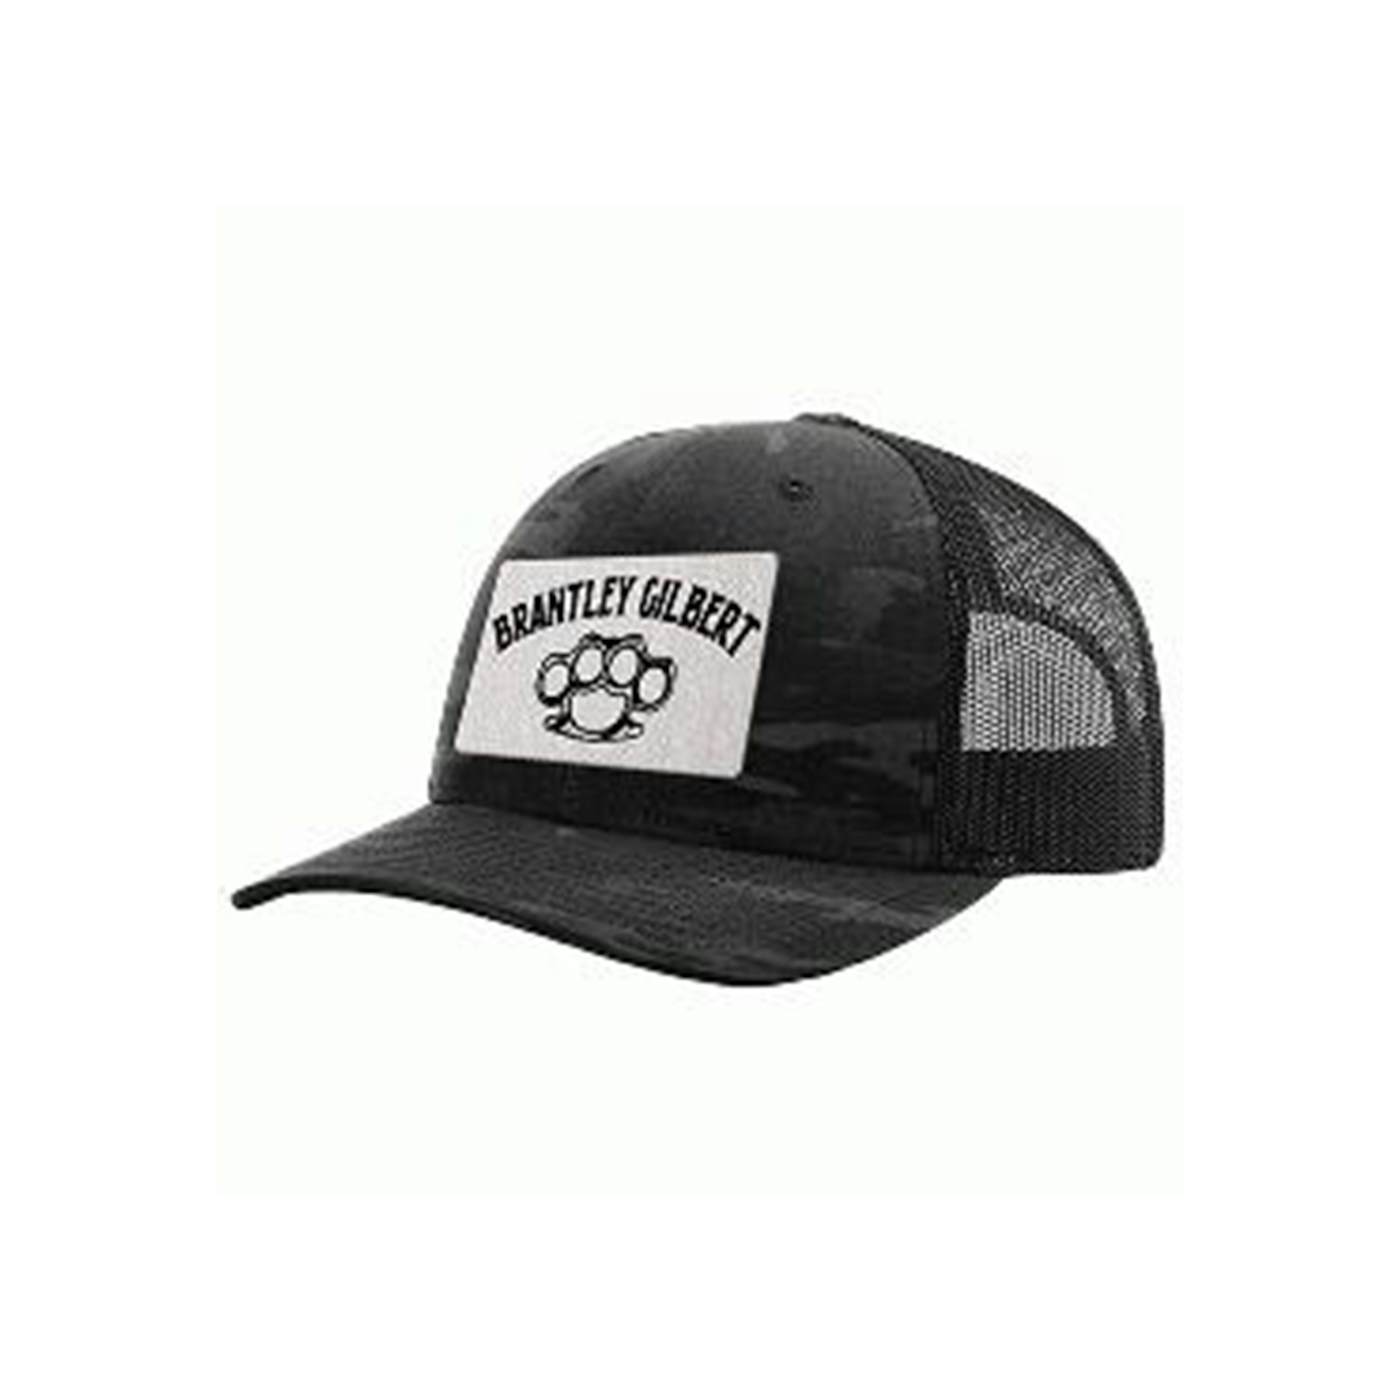 Brantley Gilbert Knuckles Dark Camo Tour Trucker Hat